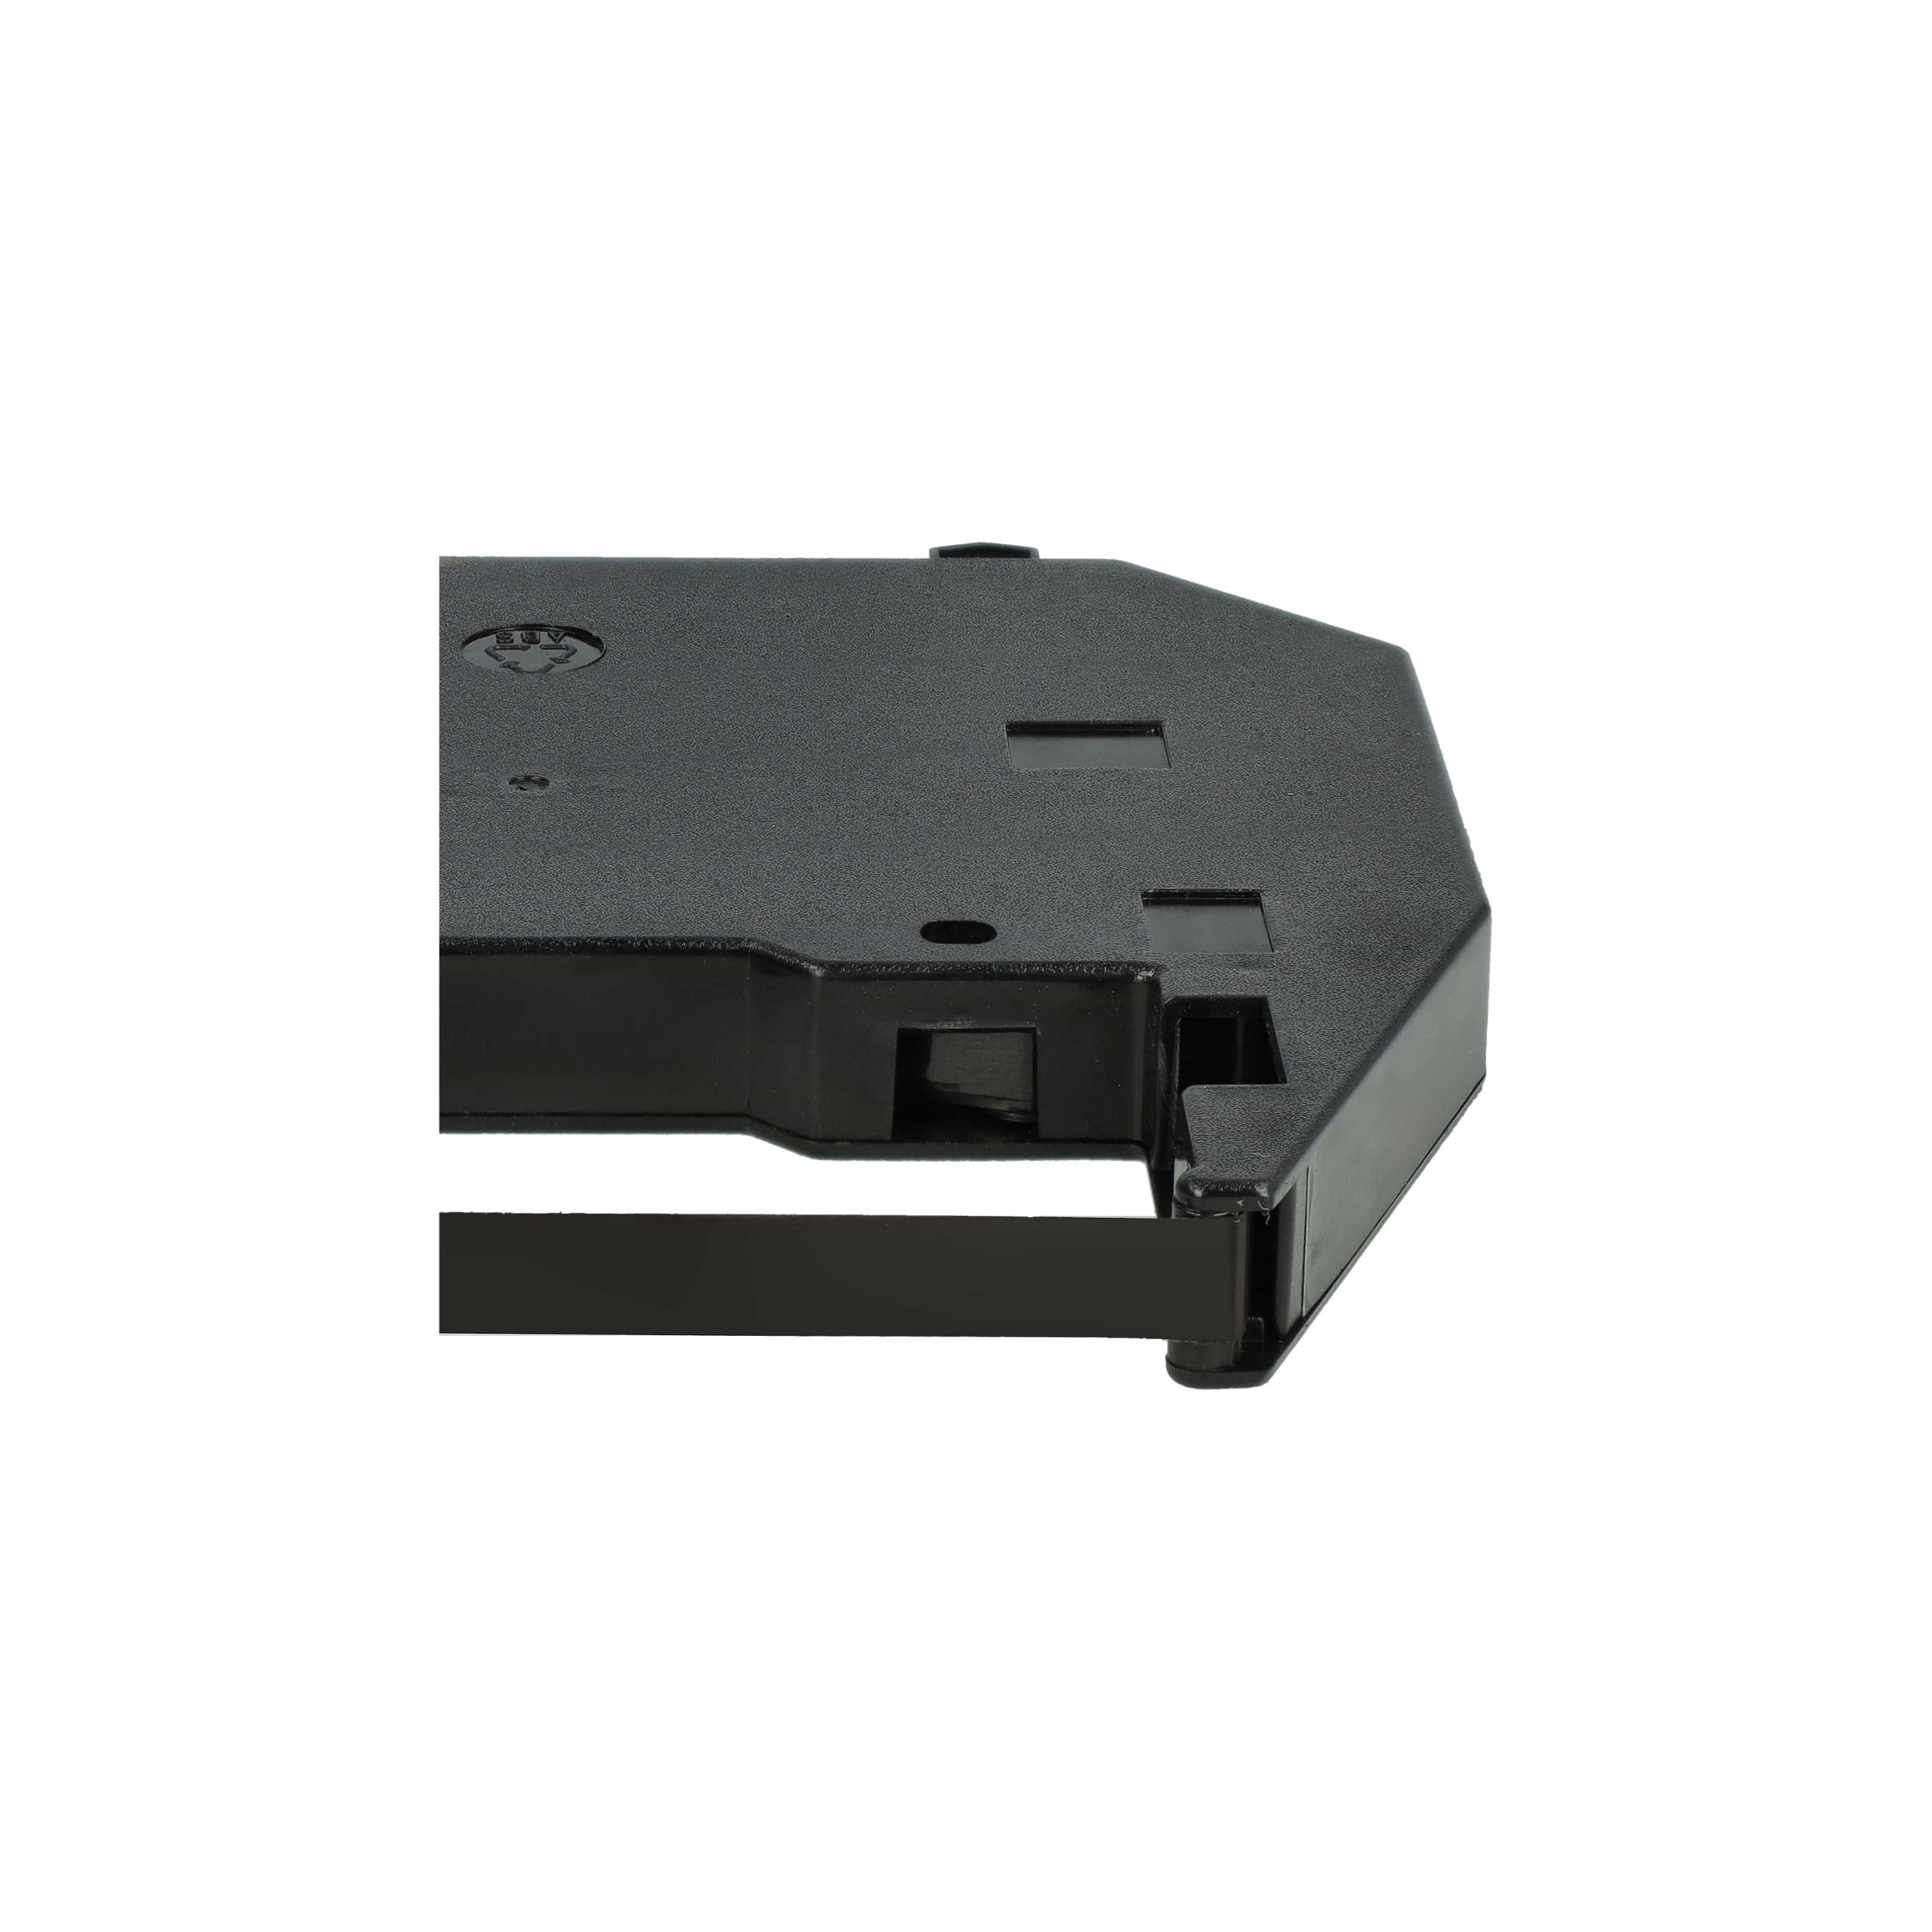 2x Ruban encreur remplace 186c1, F018602 pour imprimante matricielle / étiquette - Carbone, noir